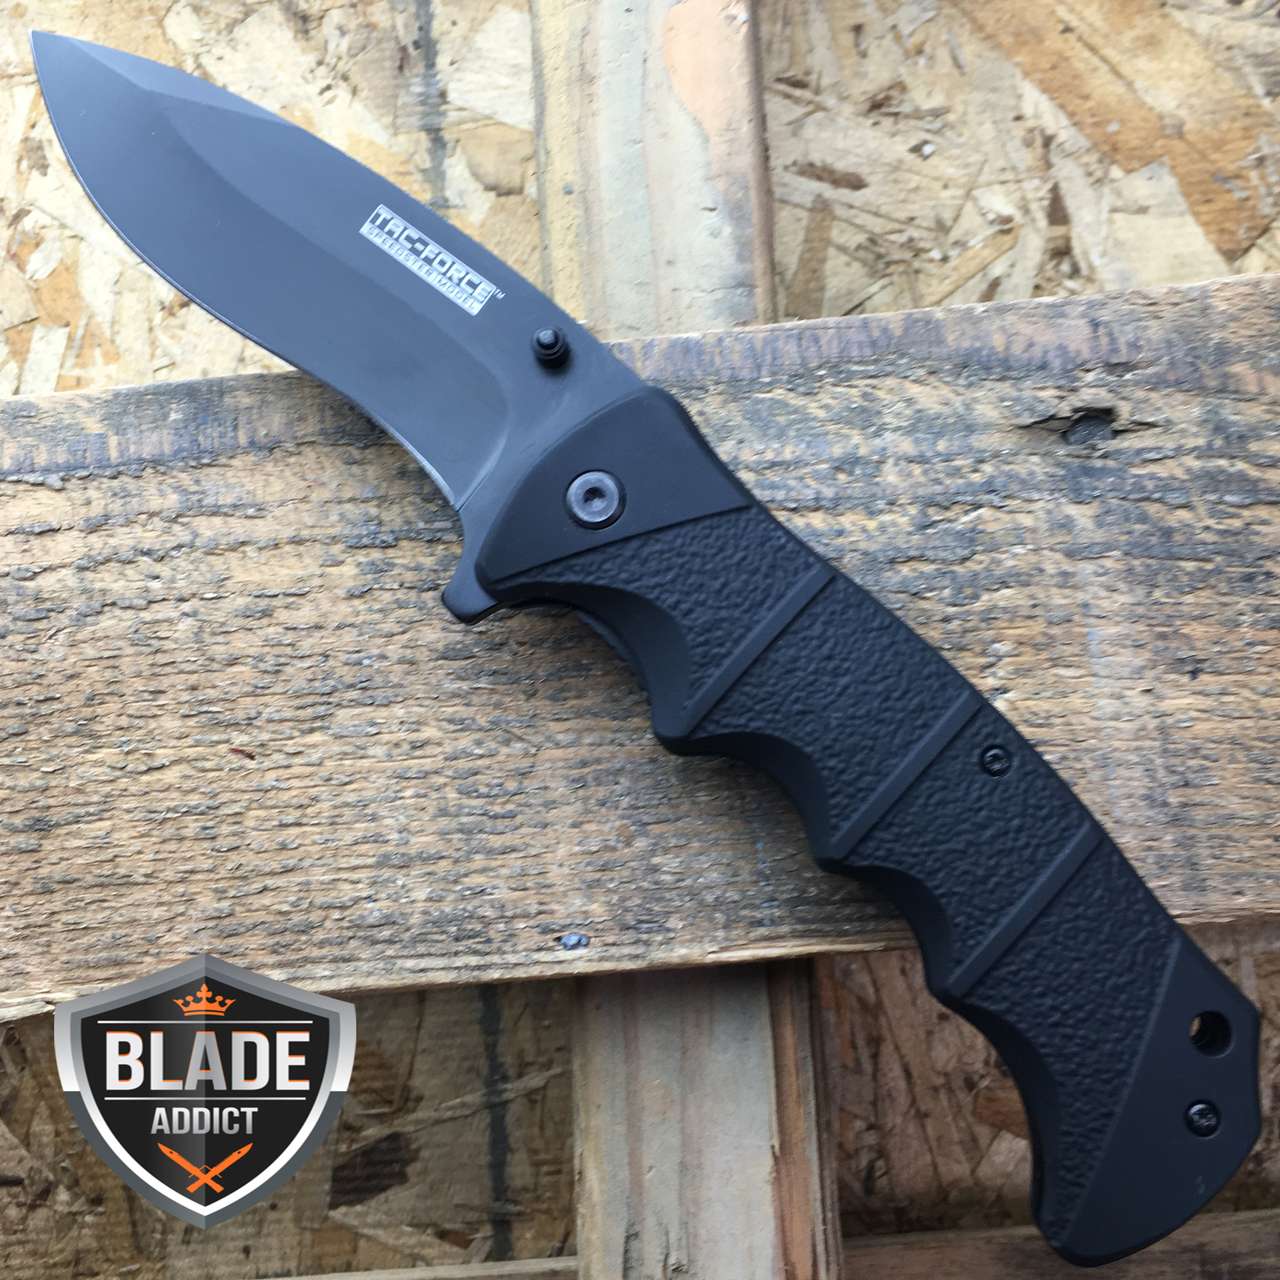 TAC FORCE Spring Assisted Opening BLACK TACTICAL Pocket Knife Folding Blade